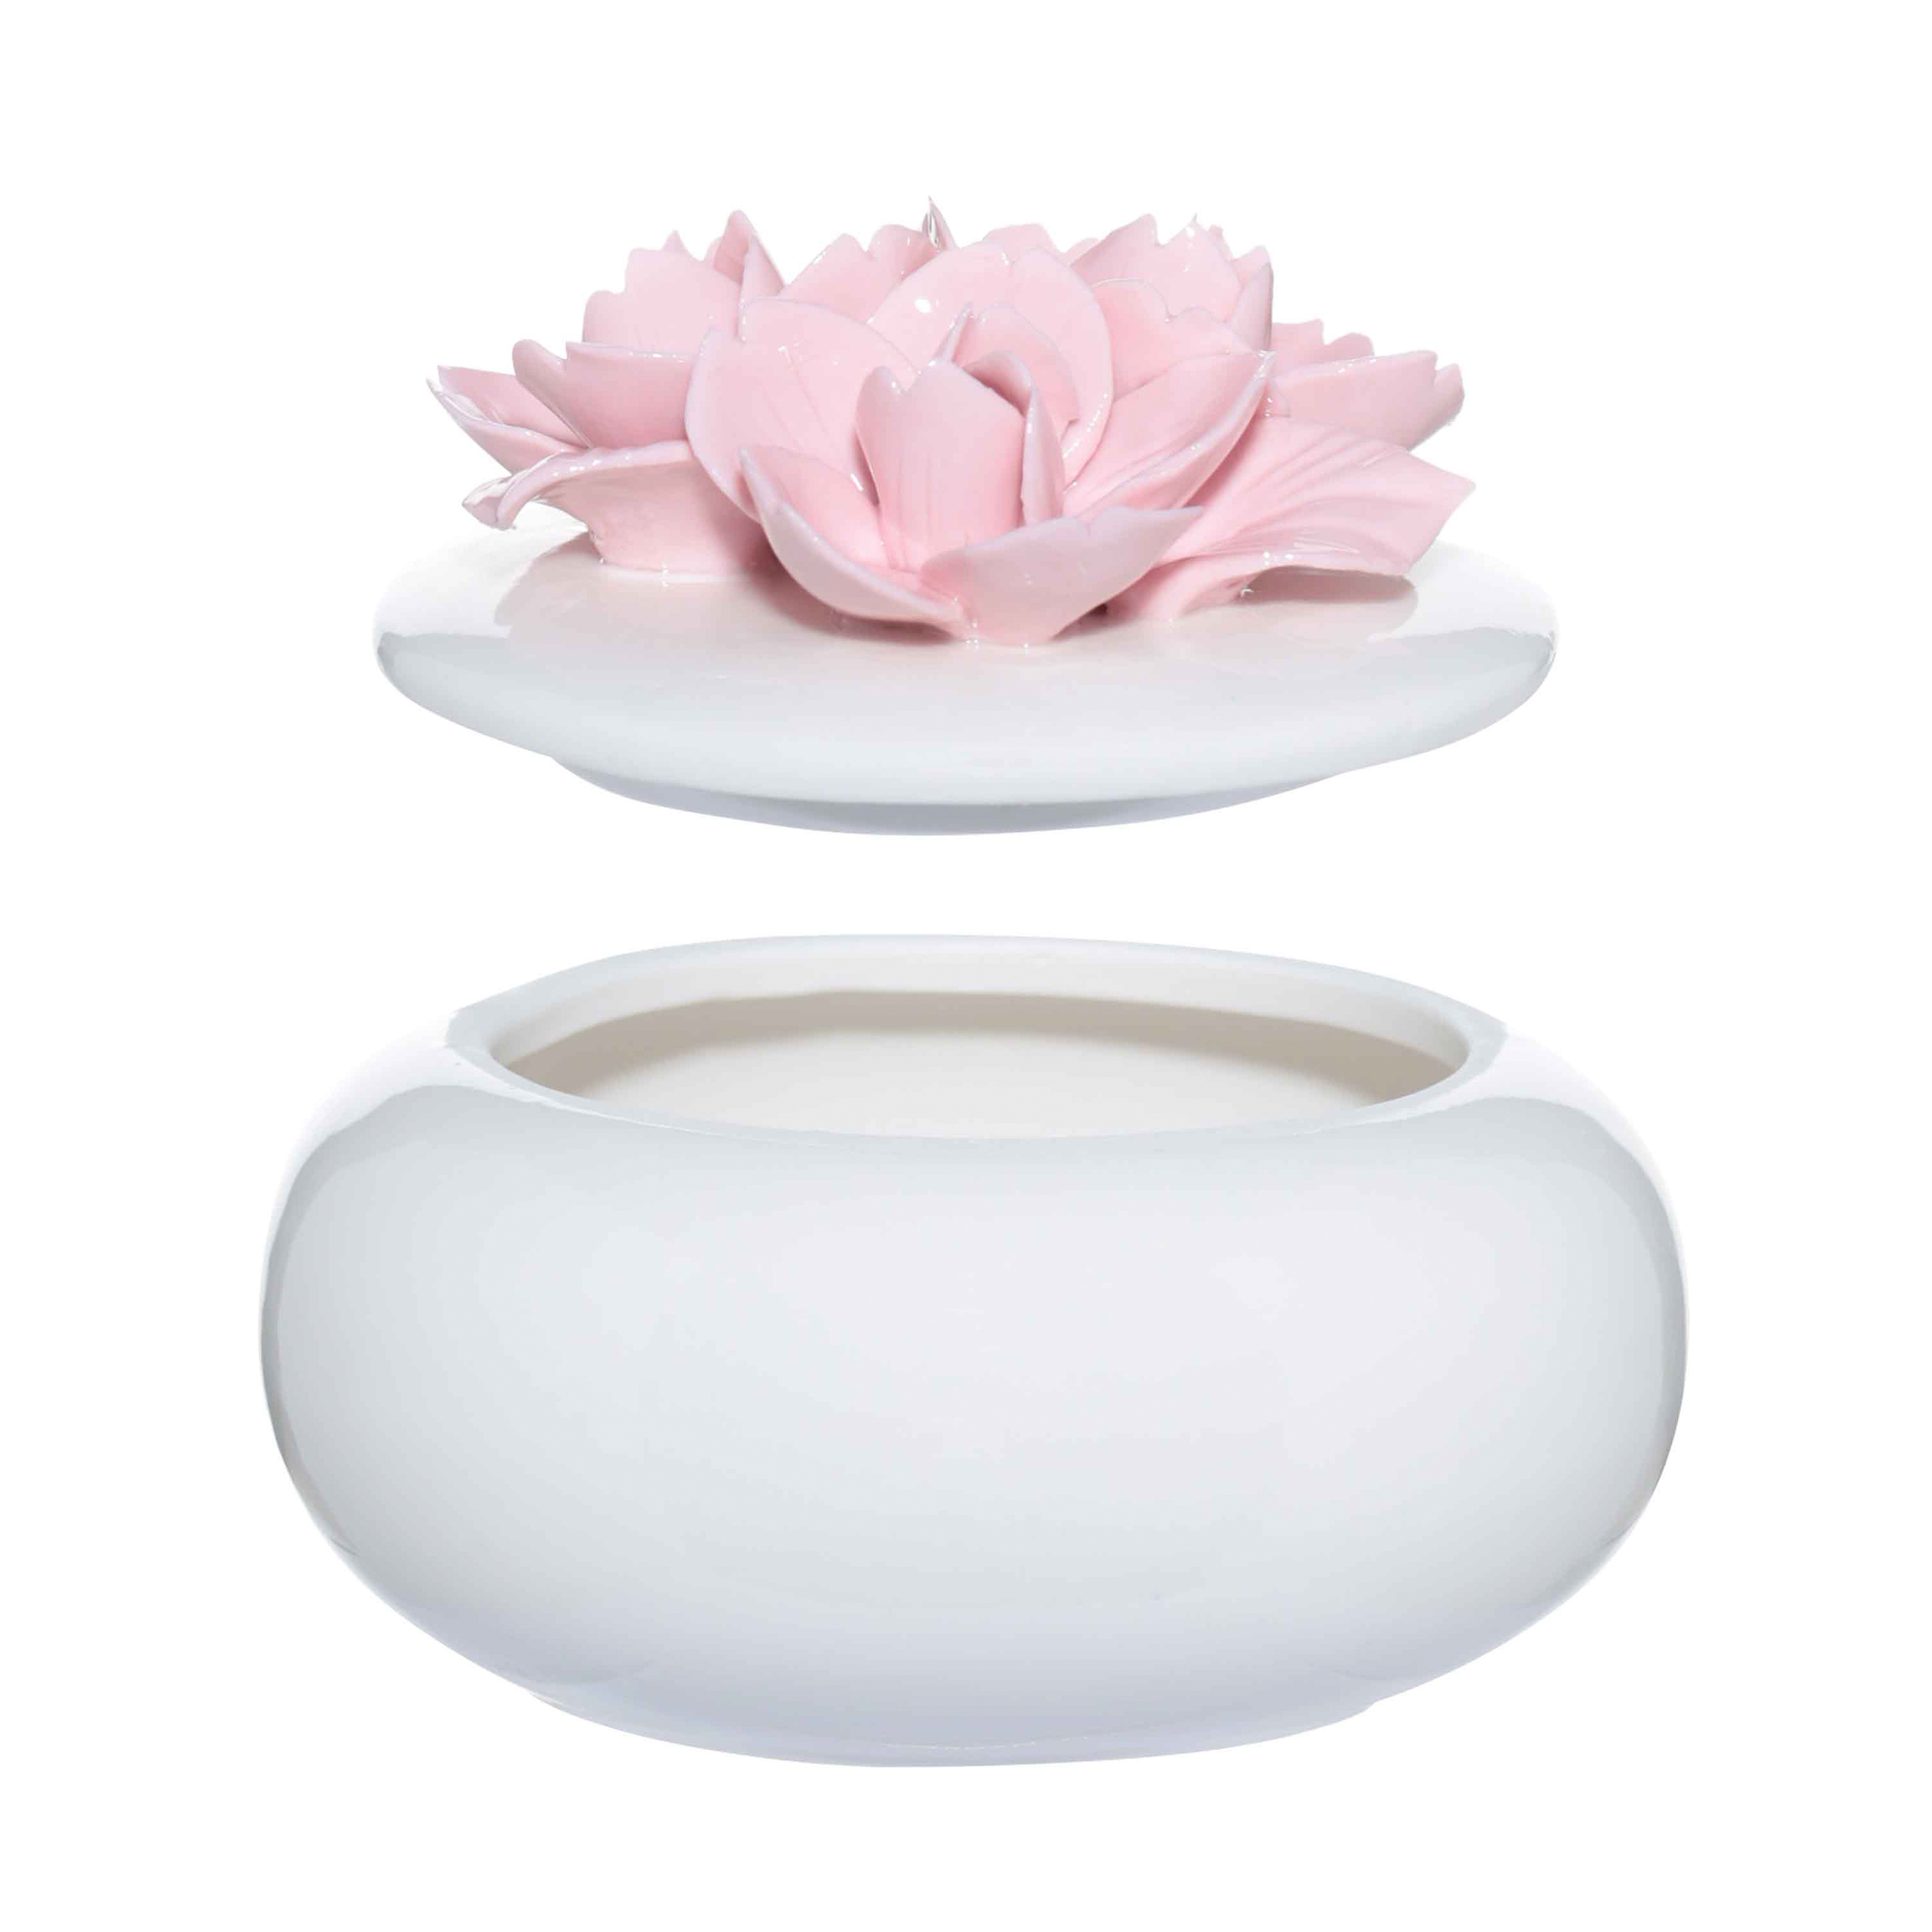 Шкатулка для украшений, 11х9 см, керамика, белая, Цветы, Magnolia изображение № 3